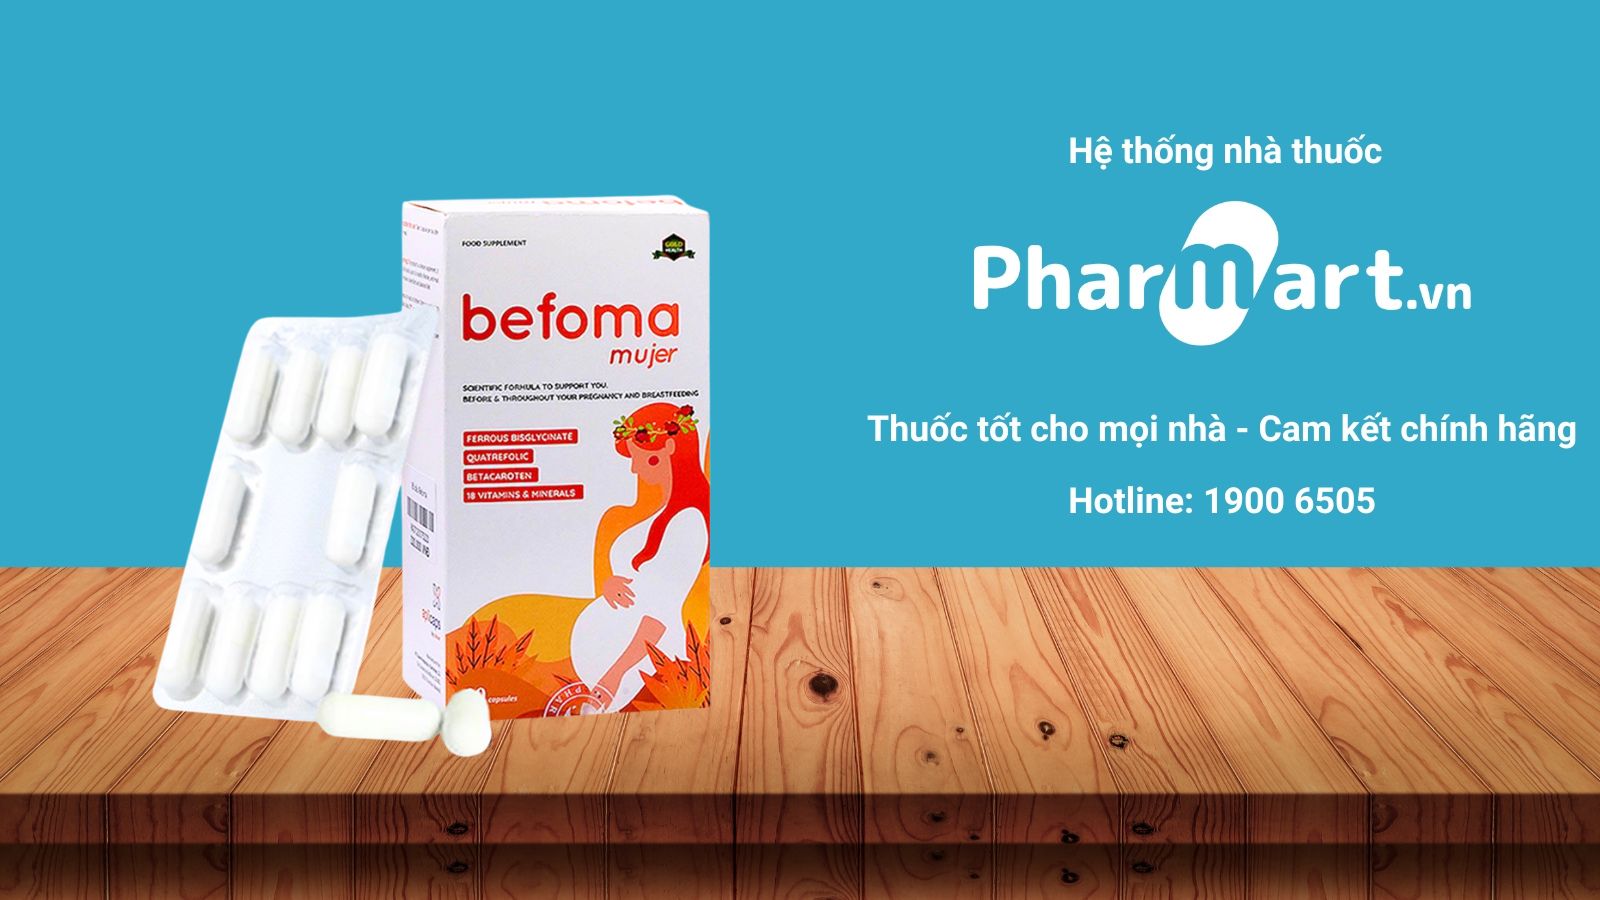 Mua ngay Befoma Mujer chính hãng tại Pharmart.vn